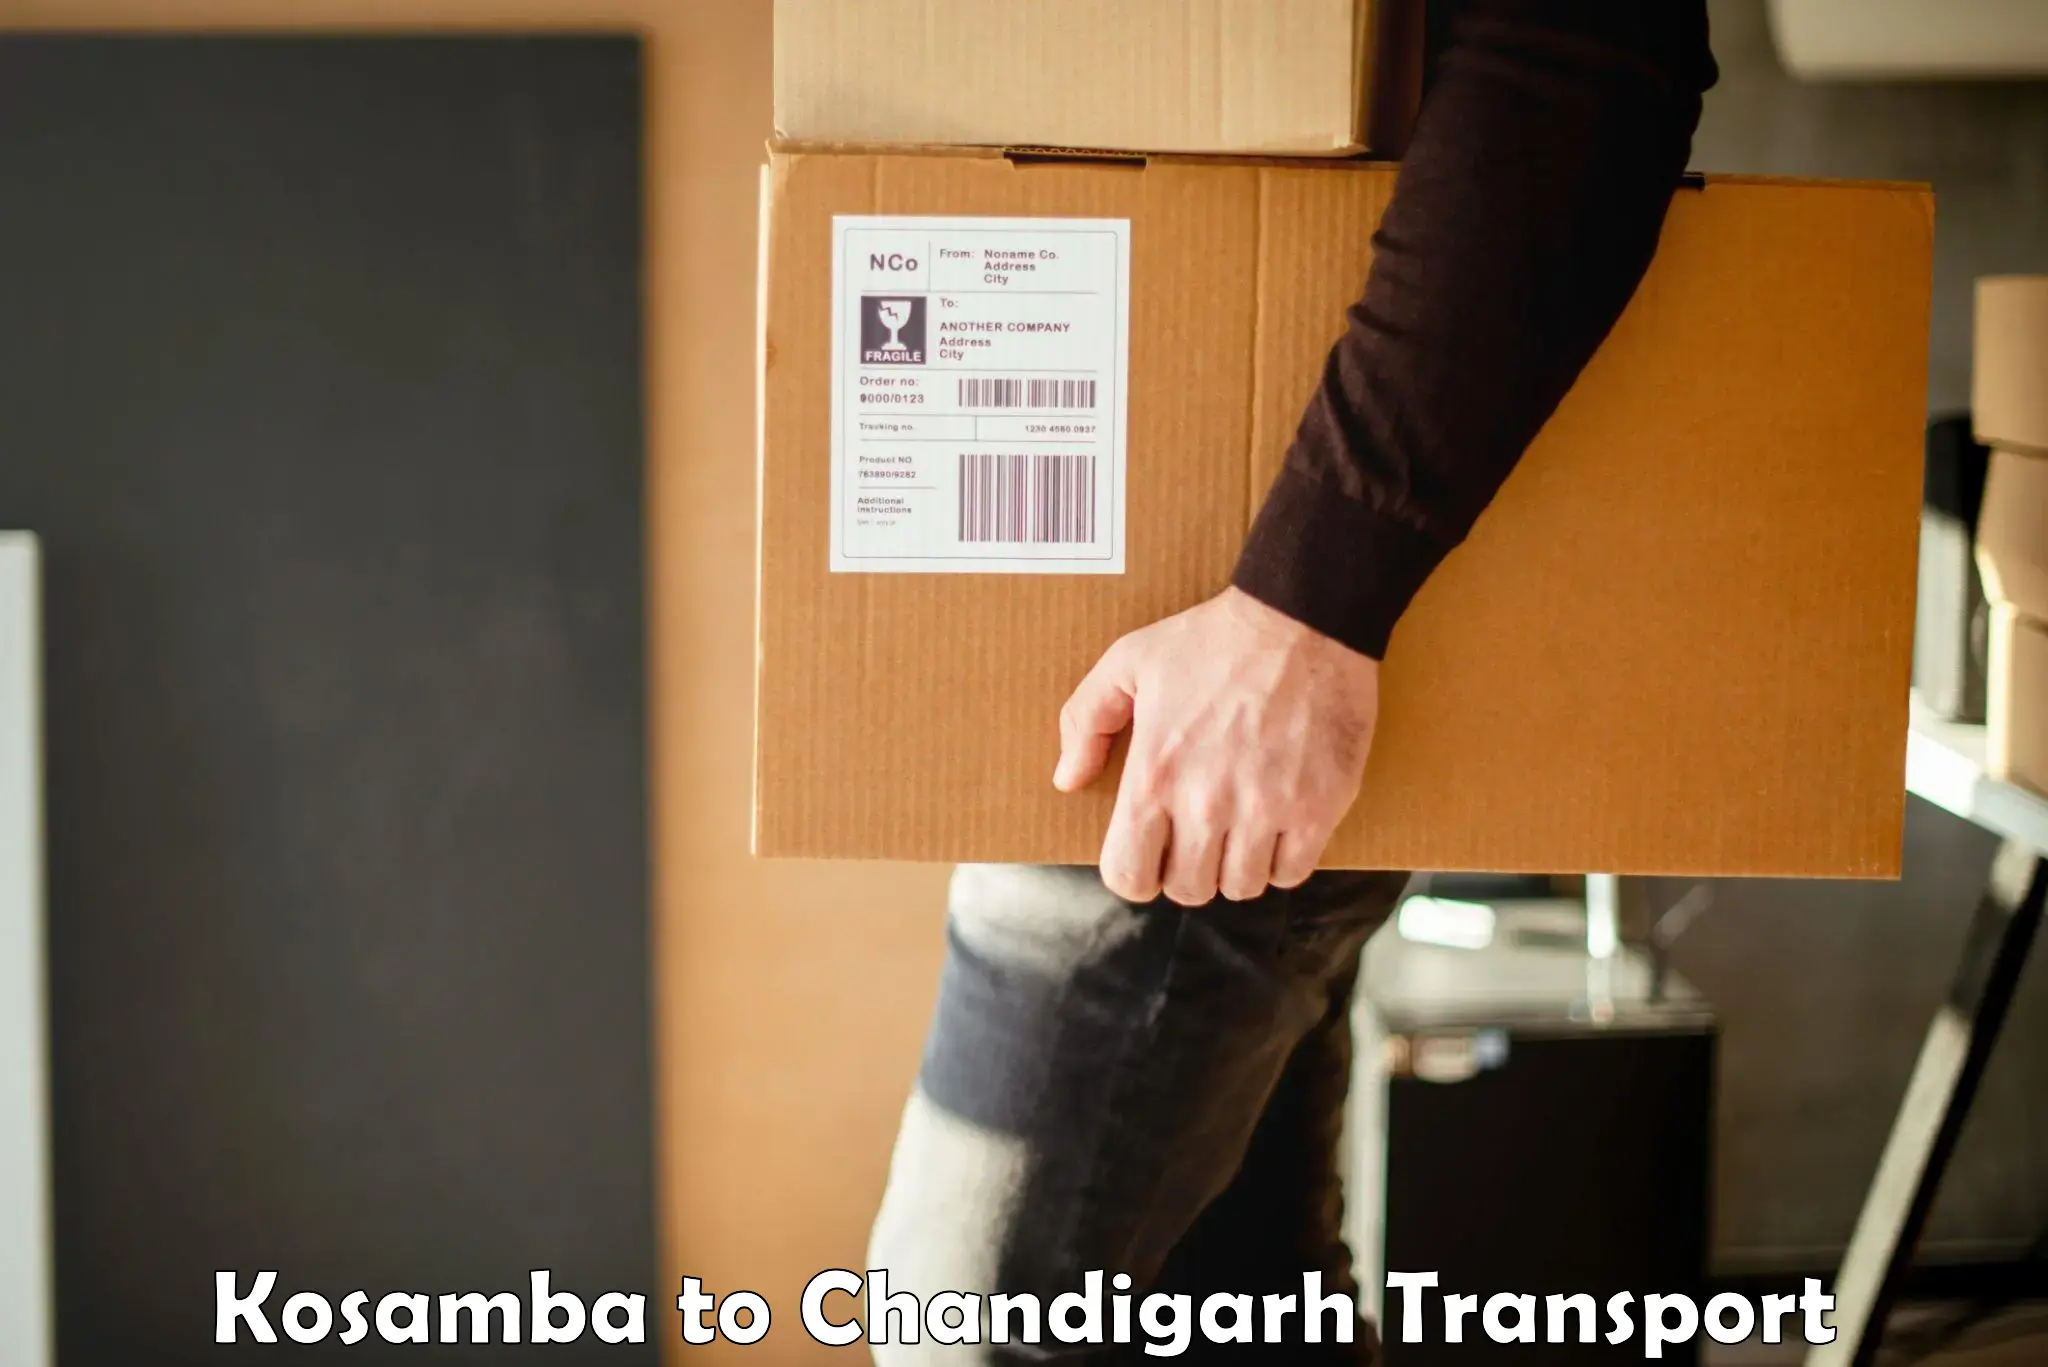 Nearest transport service Kosamba to Chandigarh